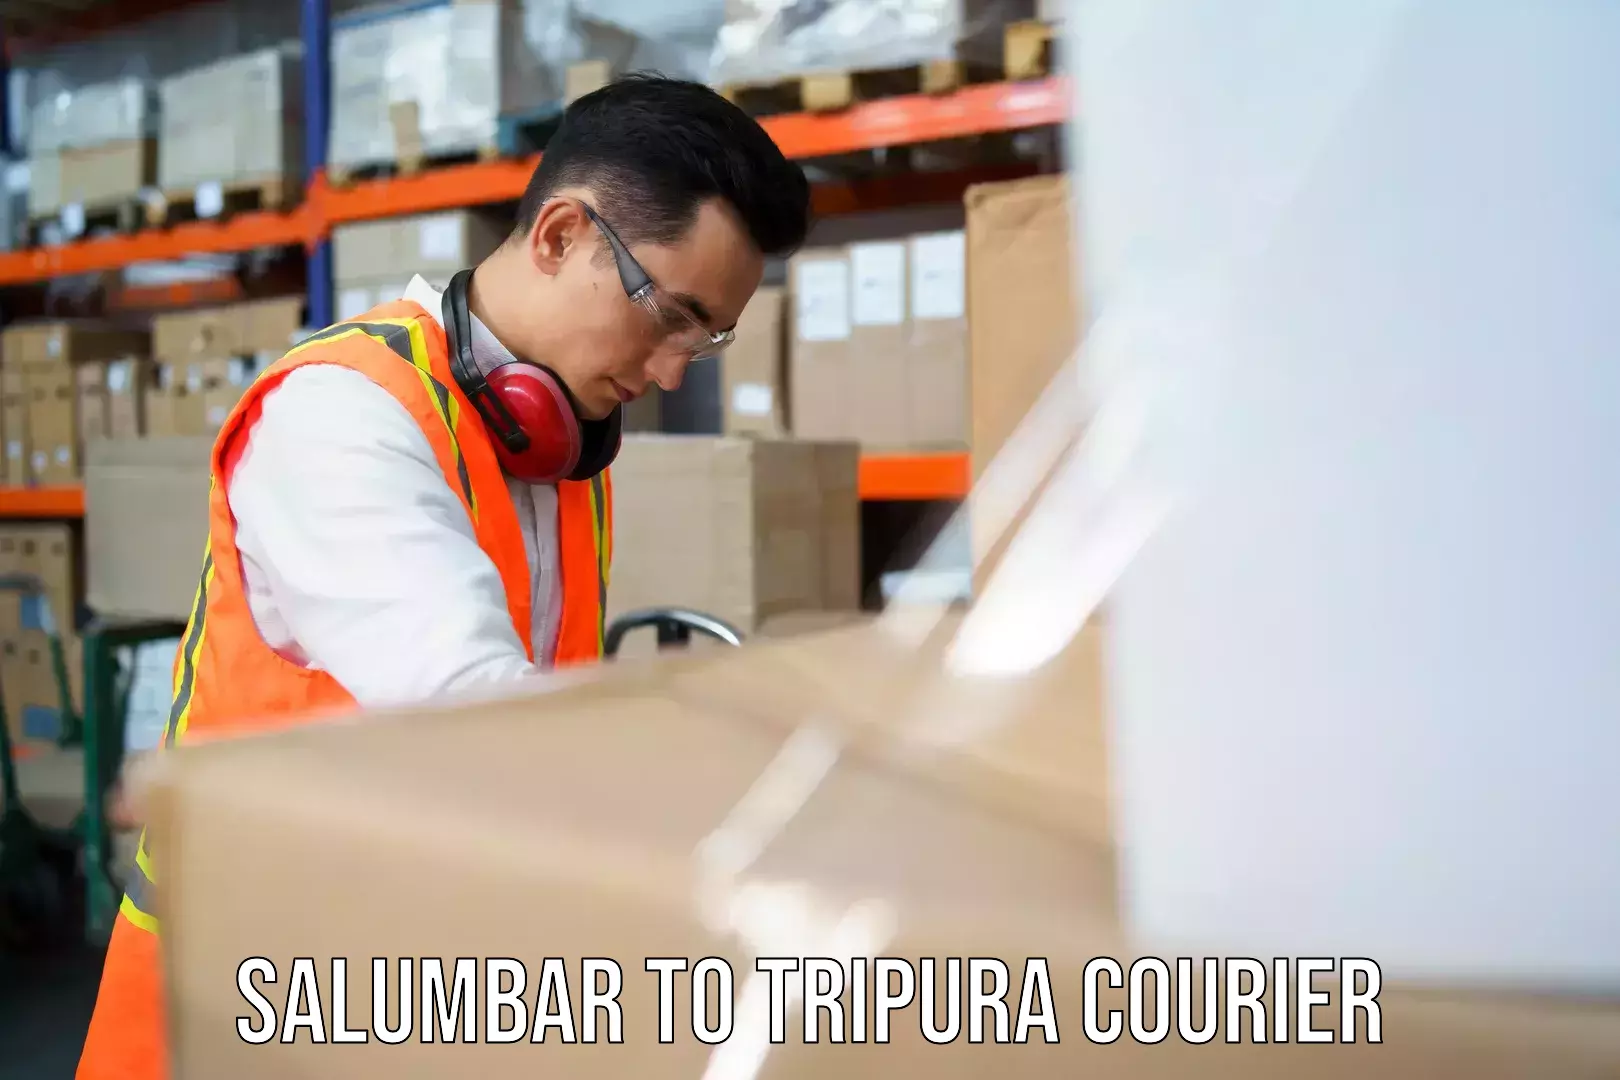 Multi-national courier services Salumbar to Manu Bazar